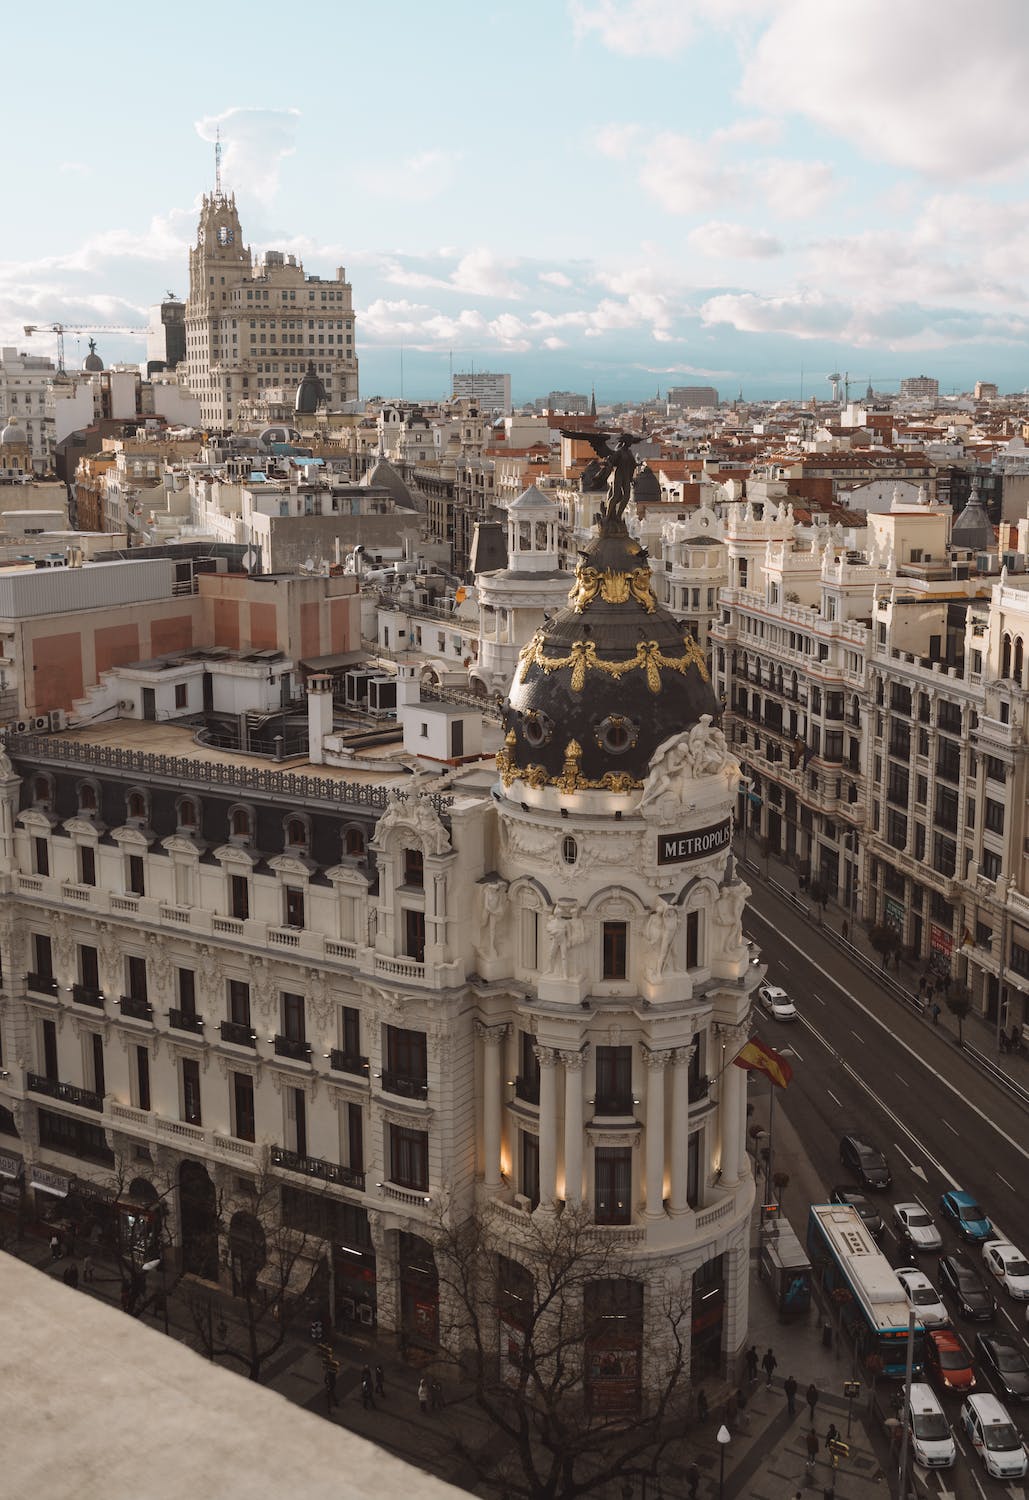 ¡Descubre lo mejor de Madrid! Con esta lista de lugares imprescindibles